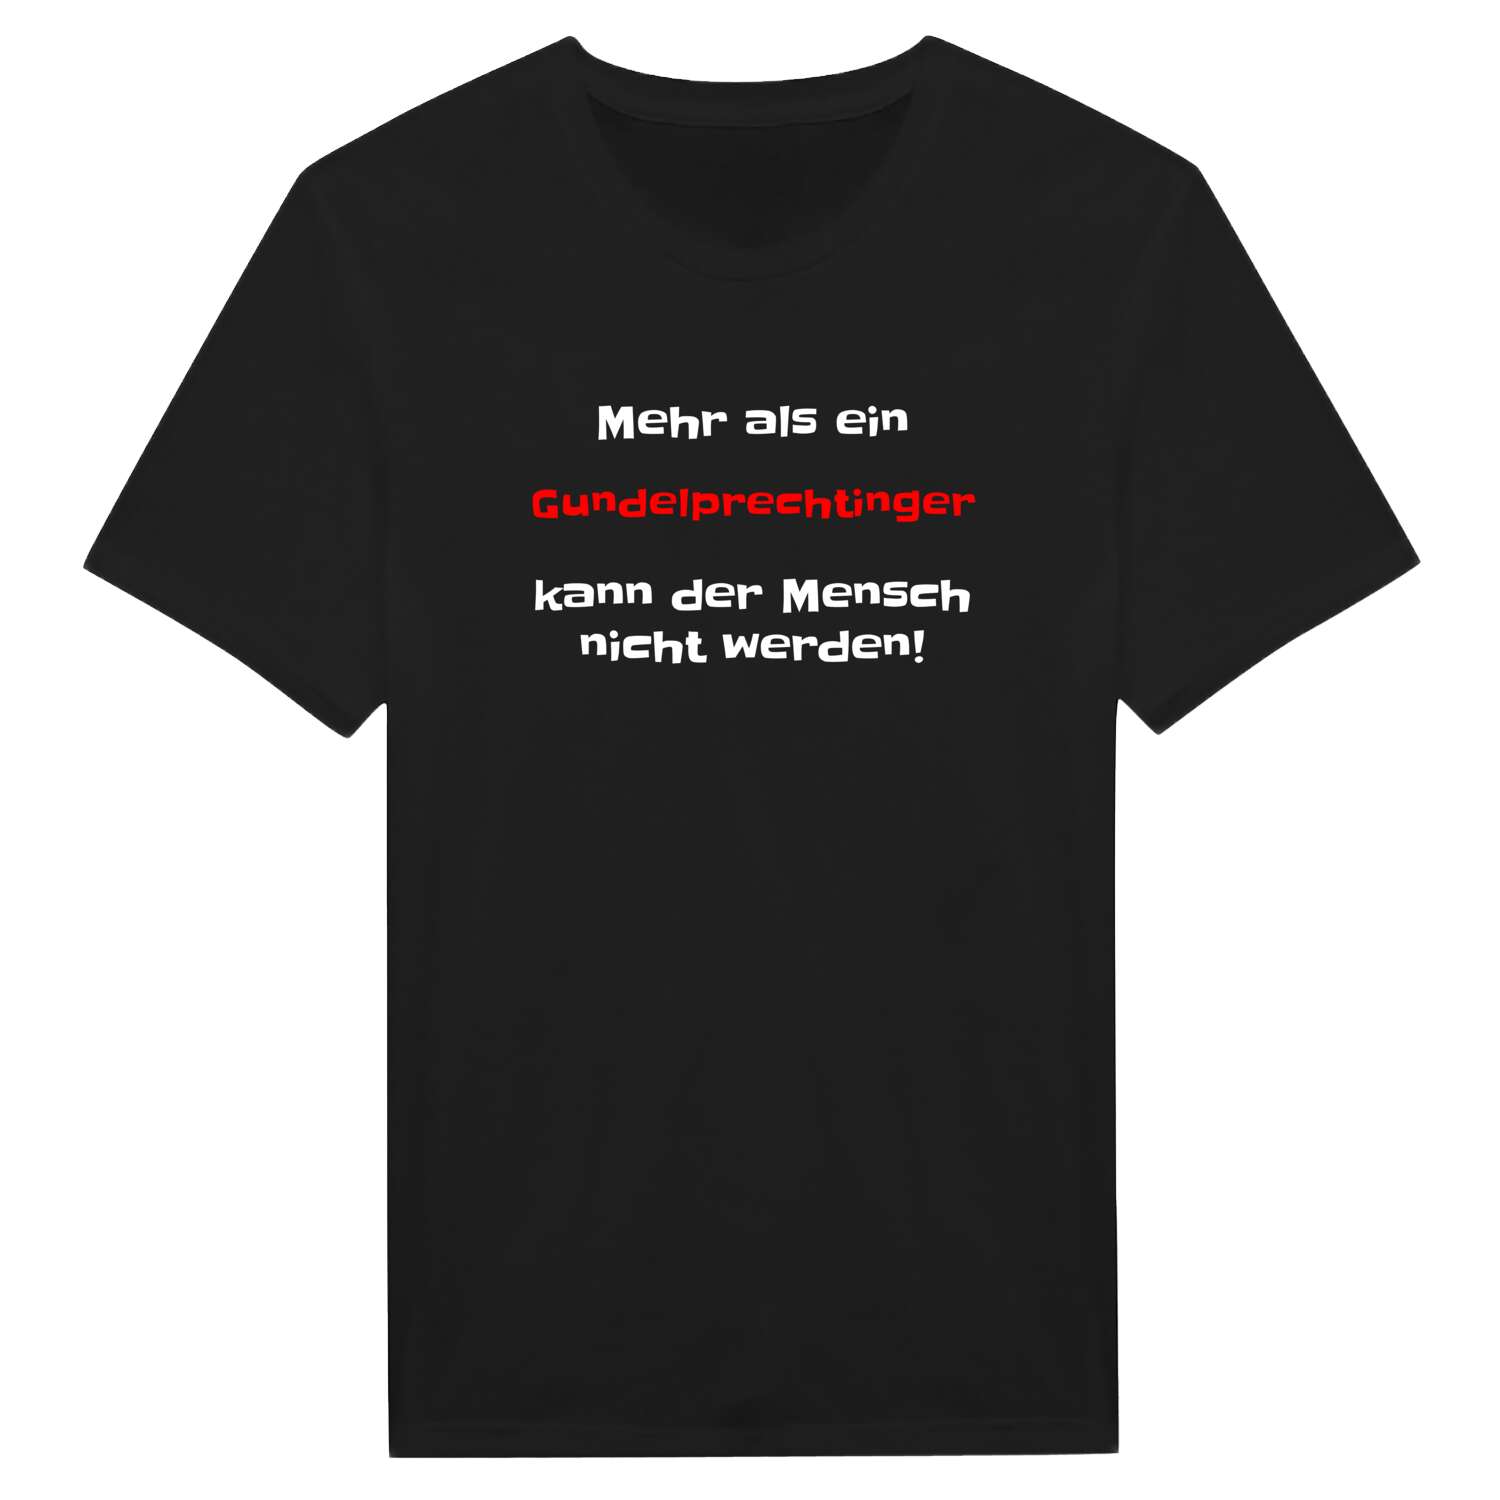 Gundelprechting T-Shirt »Mehr als ein«